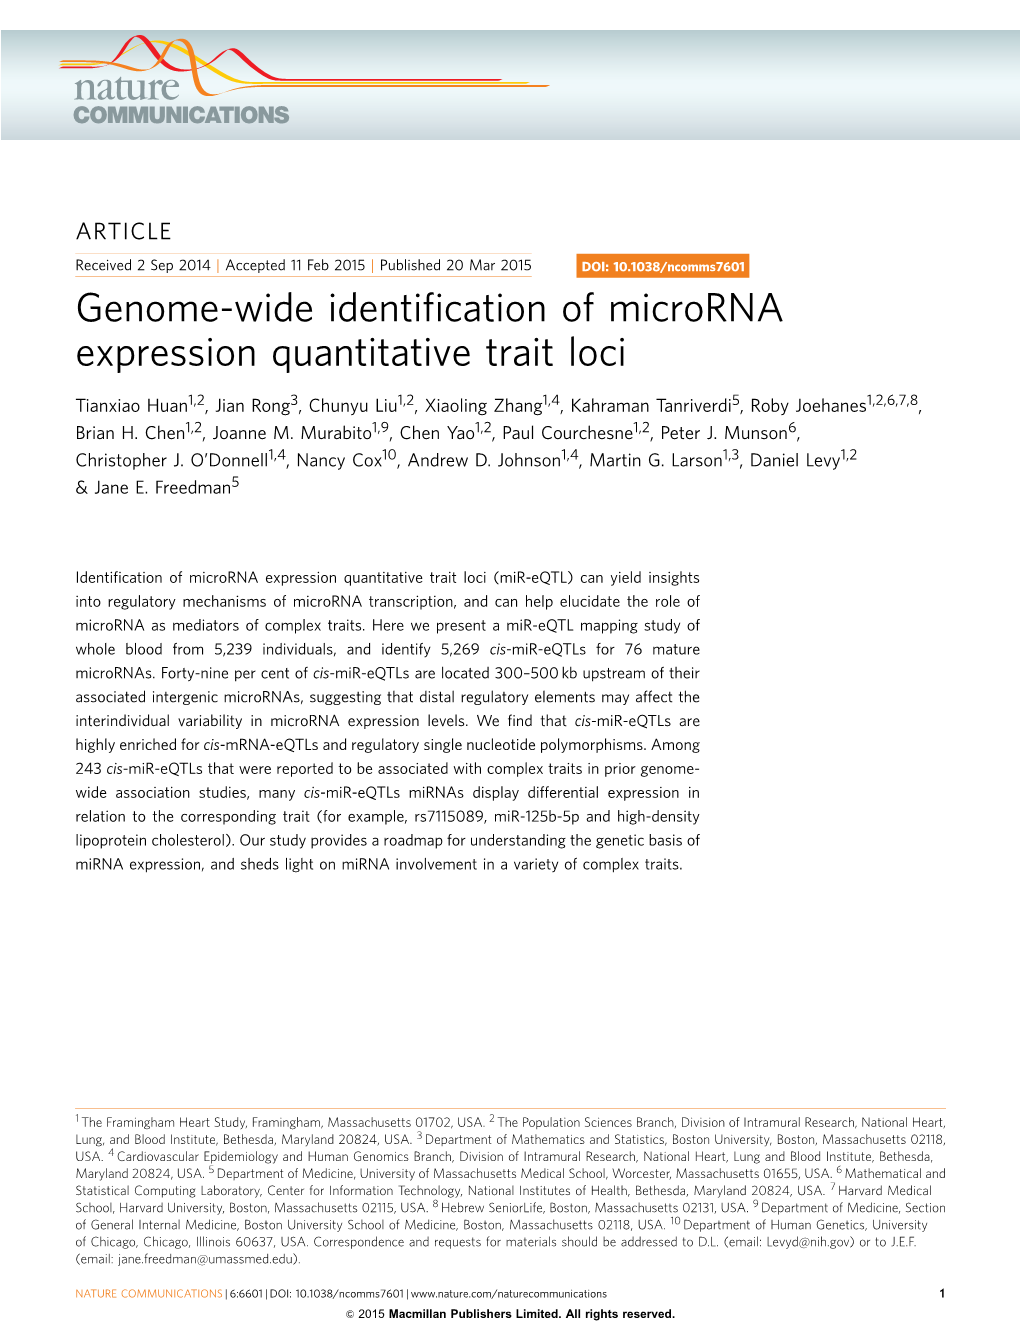 Genome-Wide Identification of Microrna Expression Quantitative